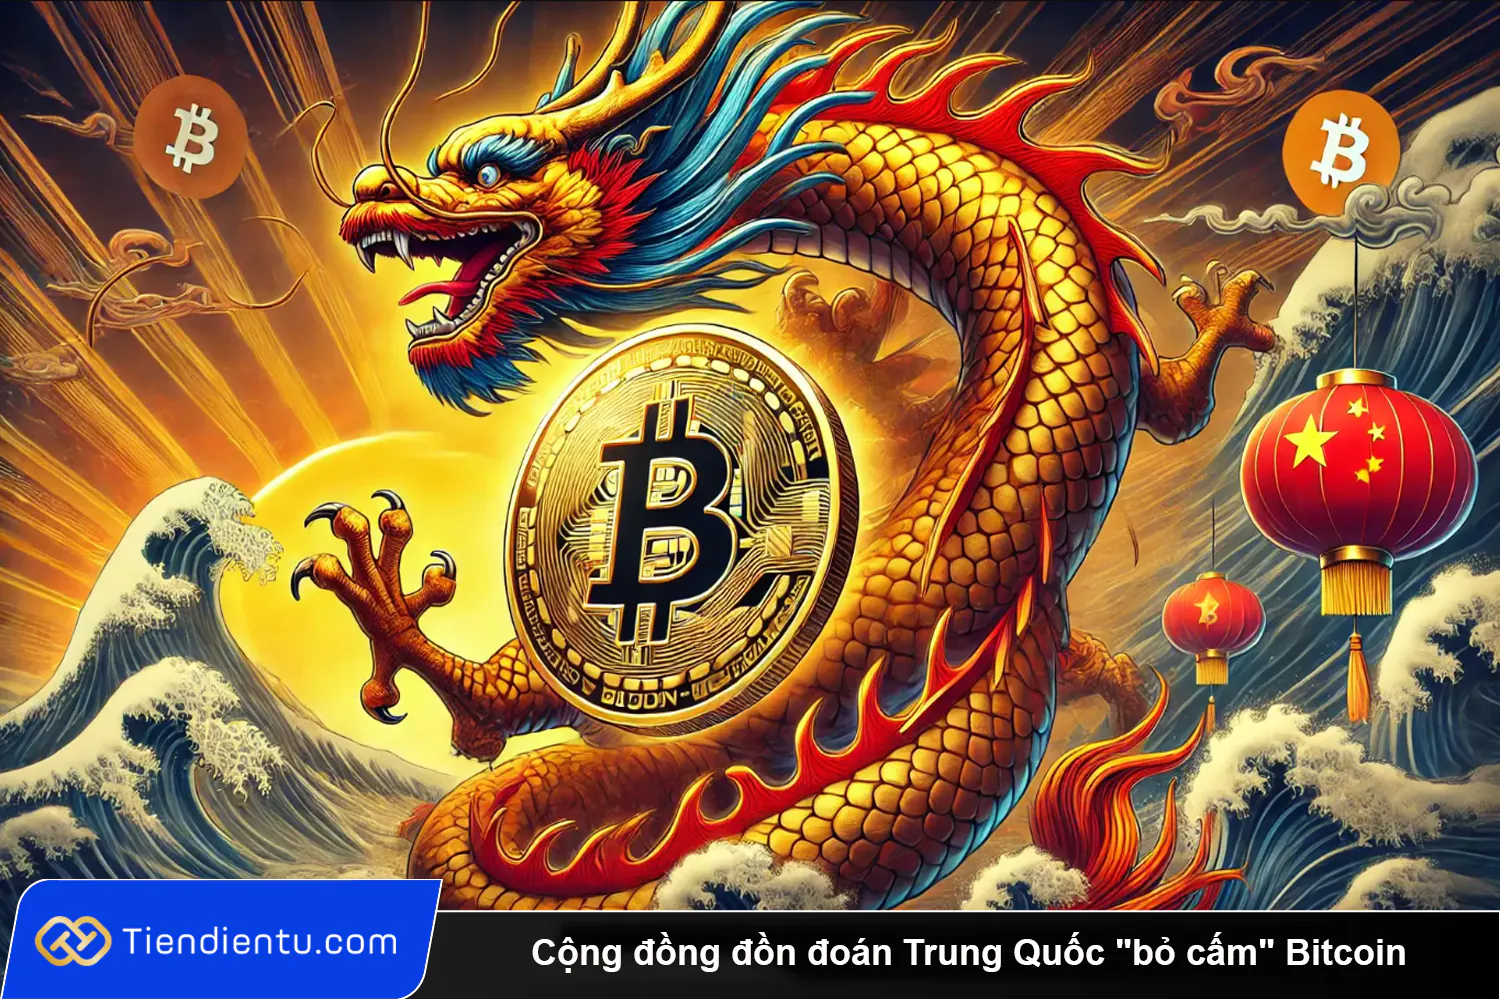 Cong dong don doan Trung Quoc bo cam Bitcoin